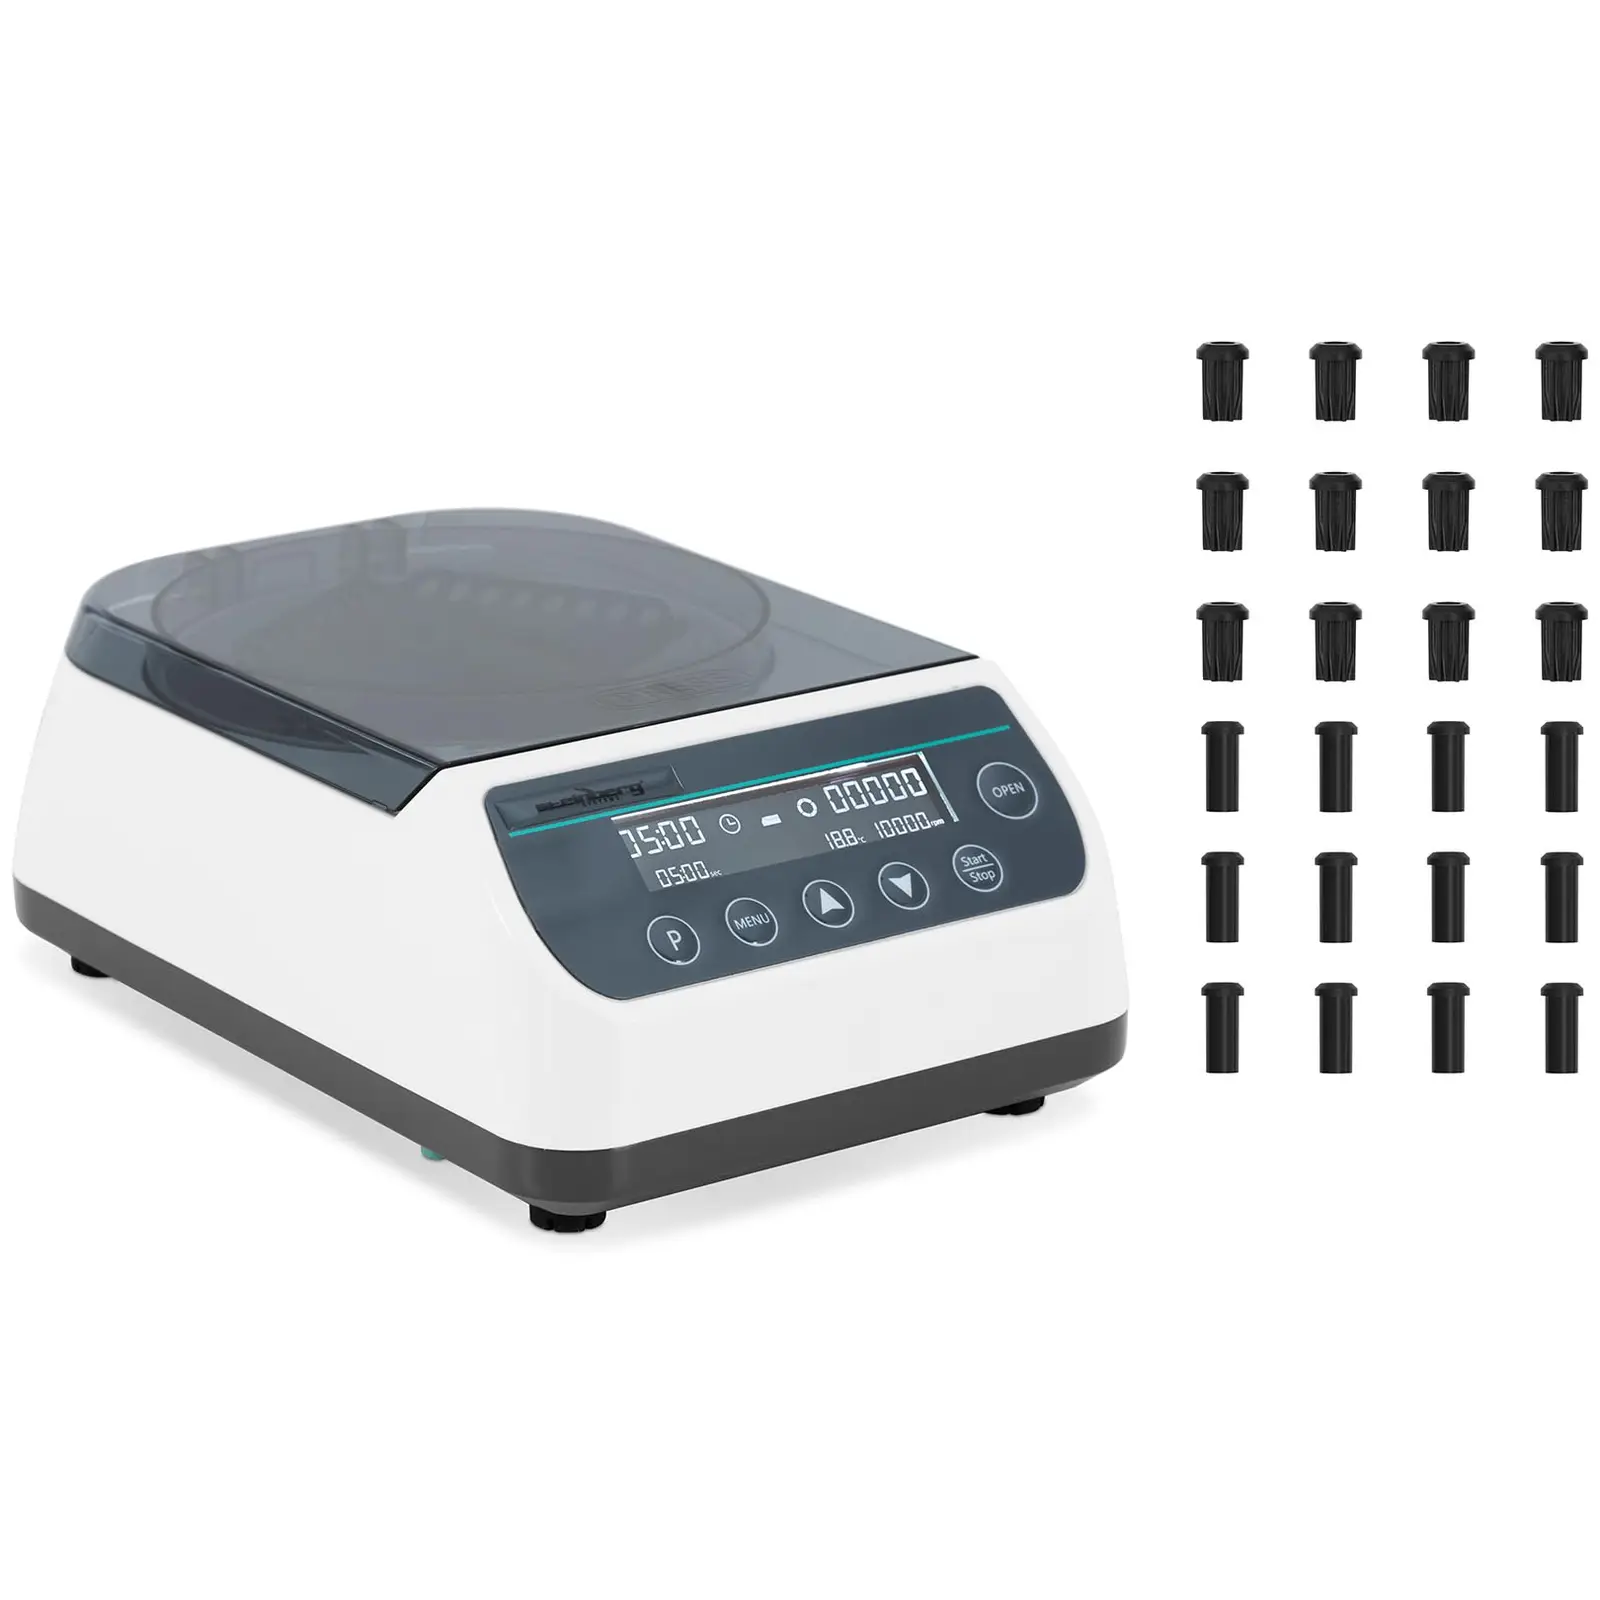 Centrífuga de laboratorio - alta velocidad - rotor 2 en 1 - 10 000 rpm - para 12 tubos / 4 tiras PCR - RZB 6708 xg